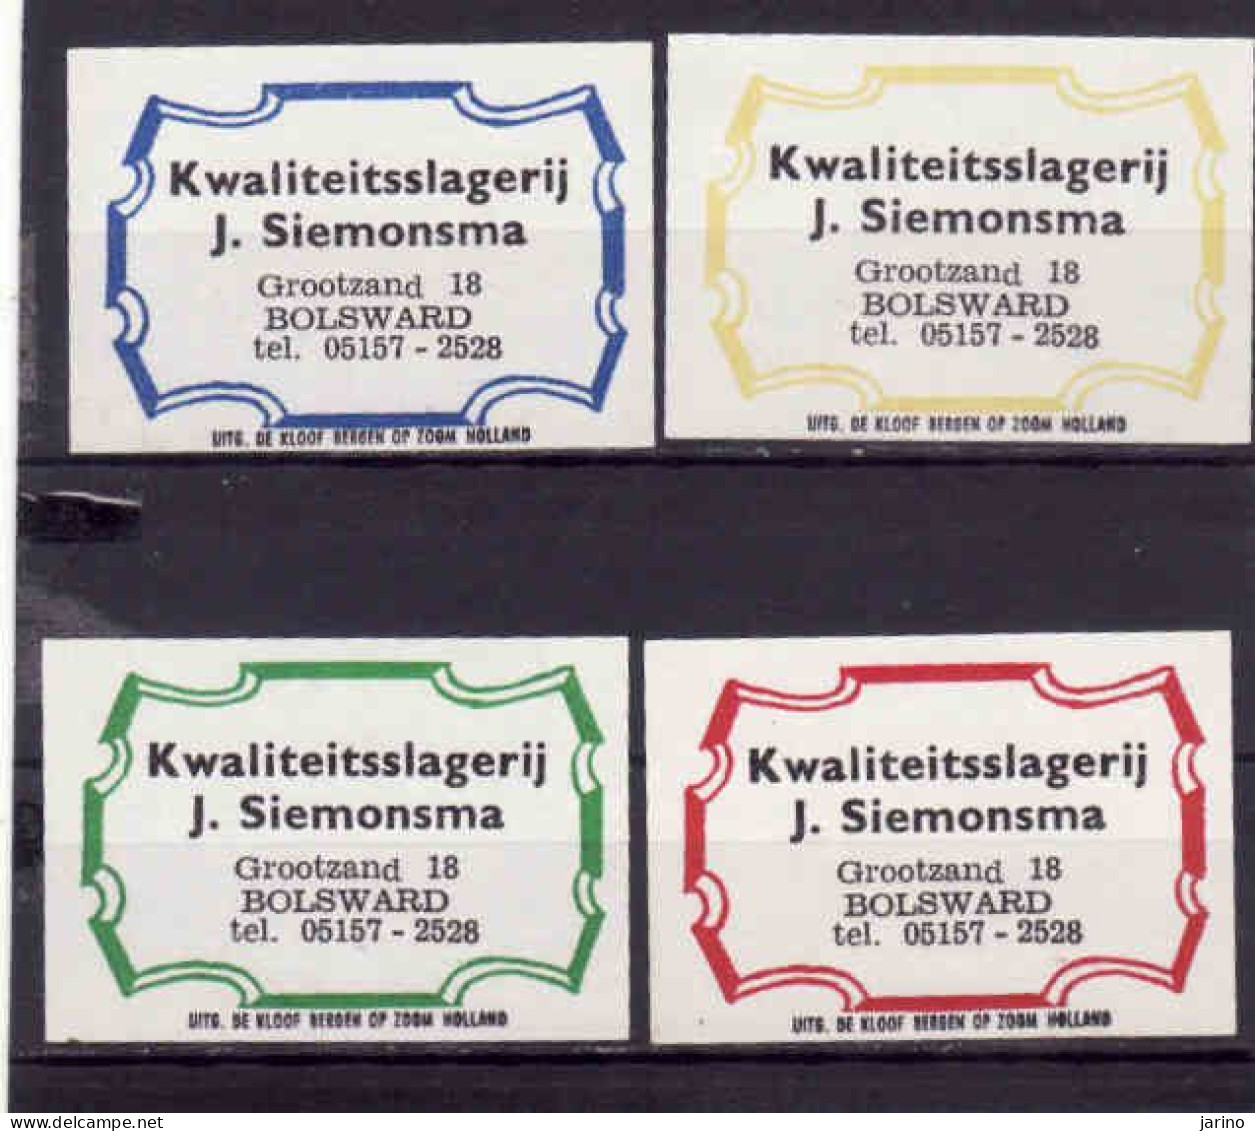 4 Dutch Matchbox Labels, Bolsward - Friesland, Kwaliteitsslagerij J. Siemonsma, Holland, Netherlands - Matchbox Labels